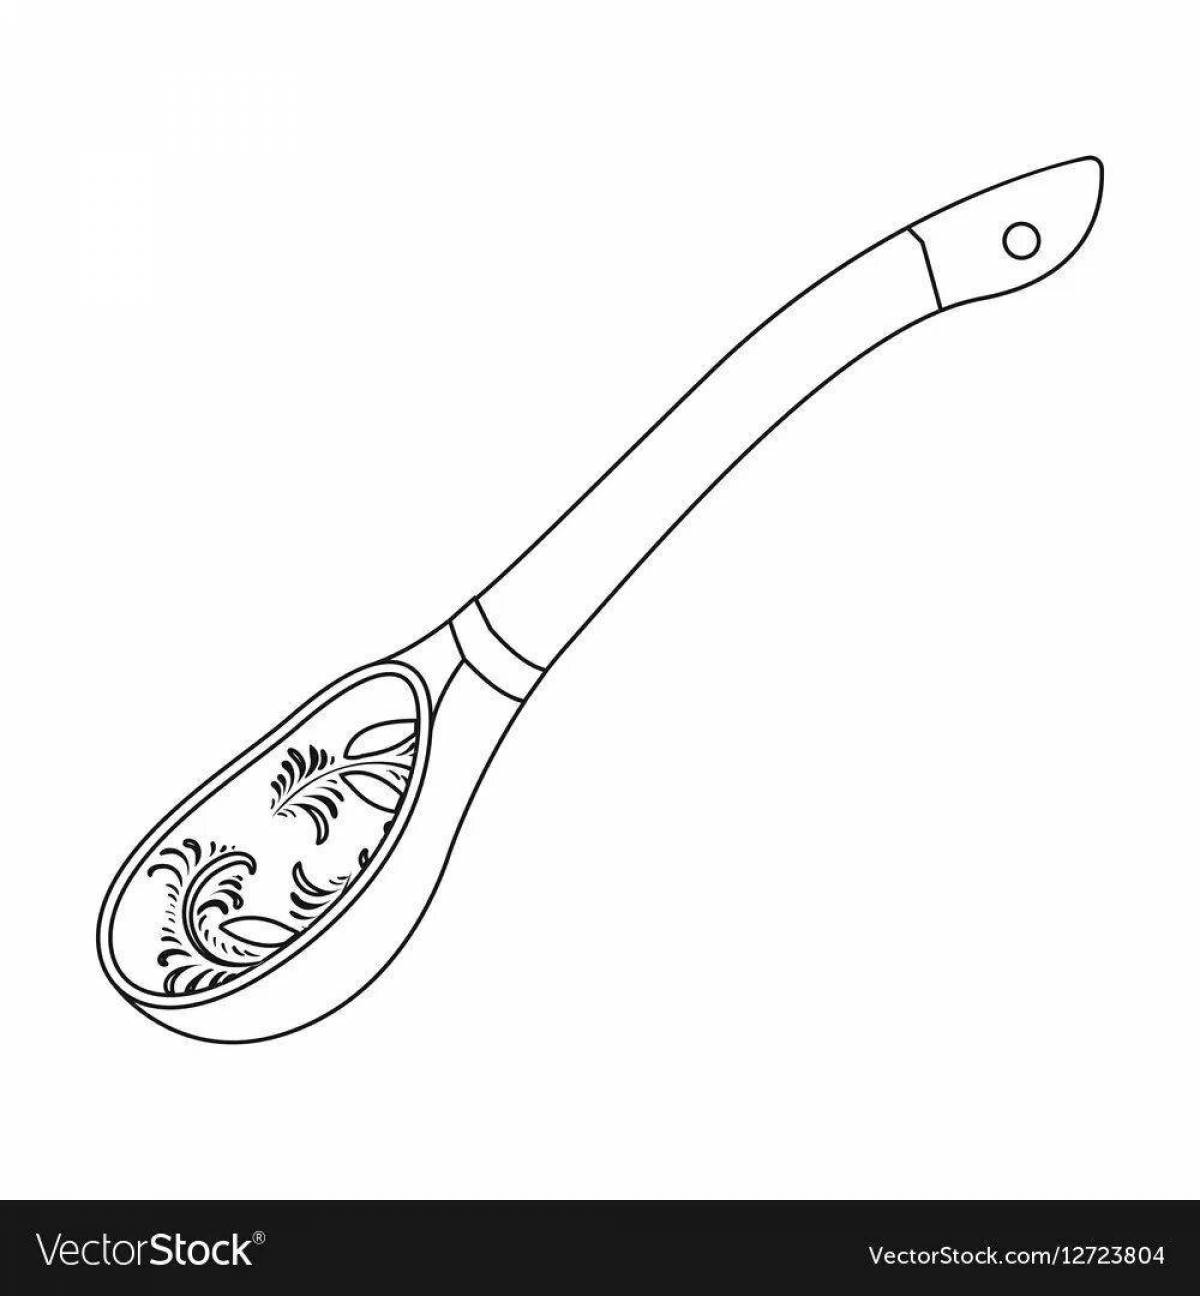 Living Khokhloma spoon coloring